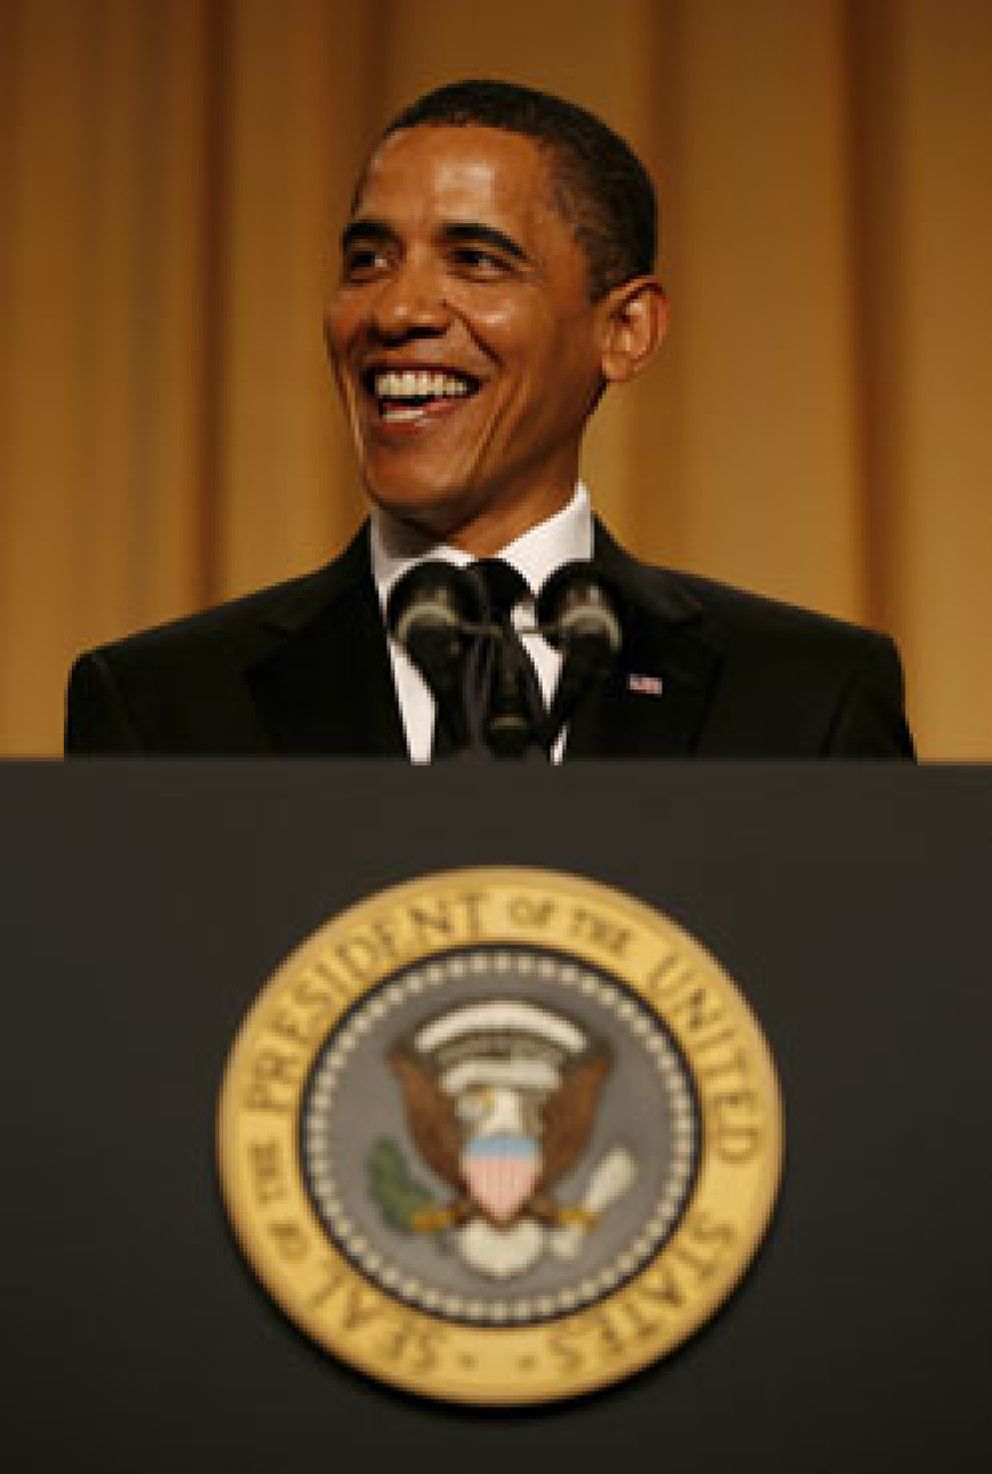 Foto: Obama bromea sobre sus 100 primeros días: "Consideraré seriamente perder la calma"